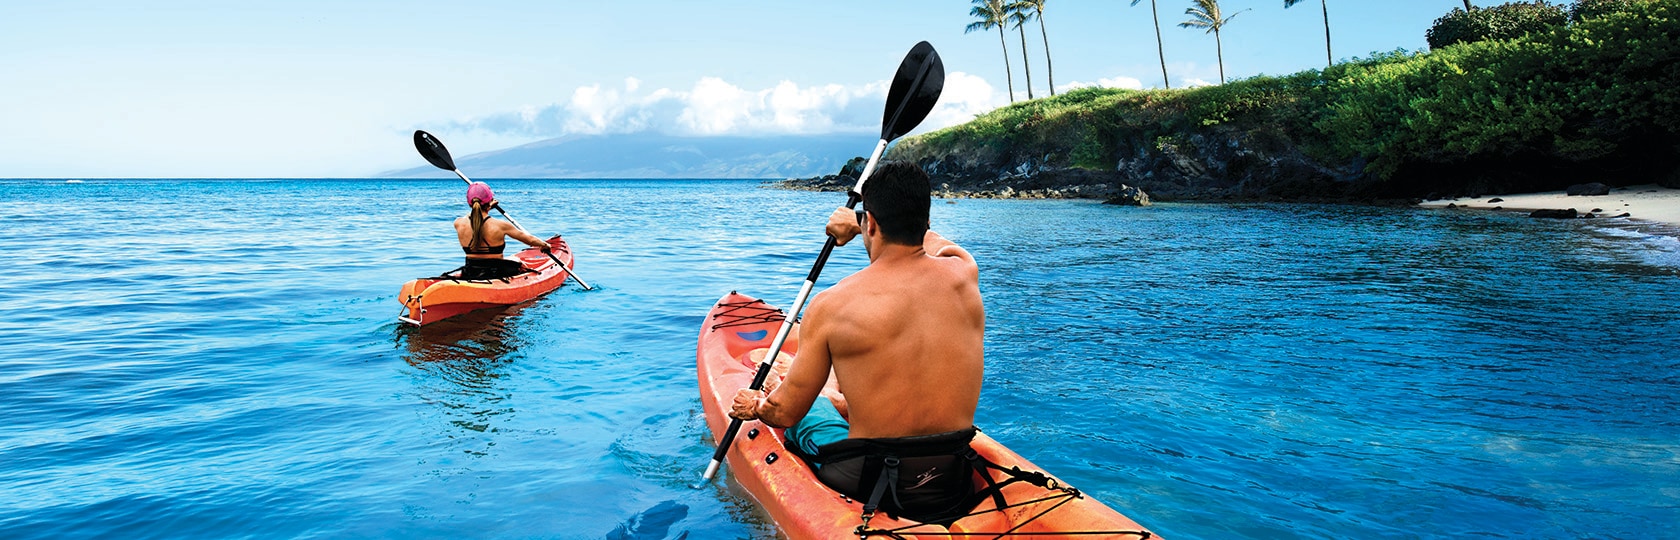 Zwei Personen beim Kajakfahren entlang der Meeresküste mit Palmen